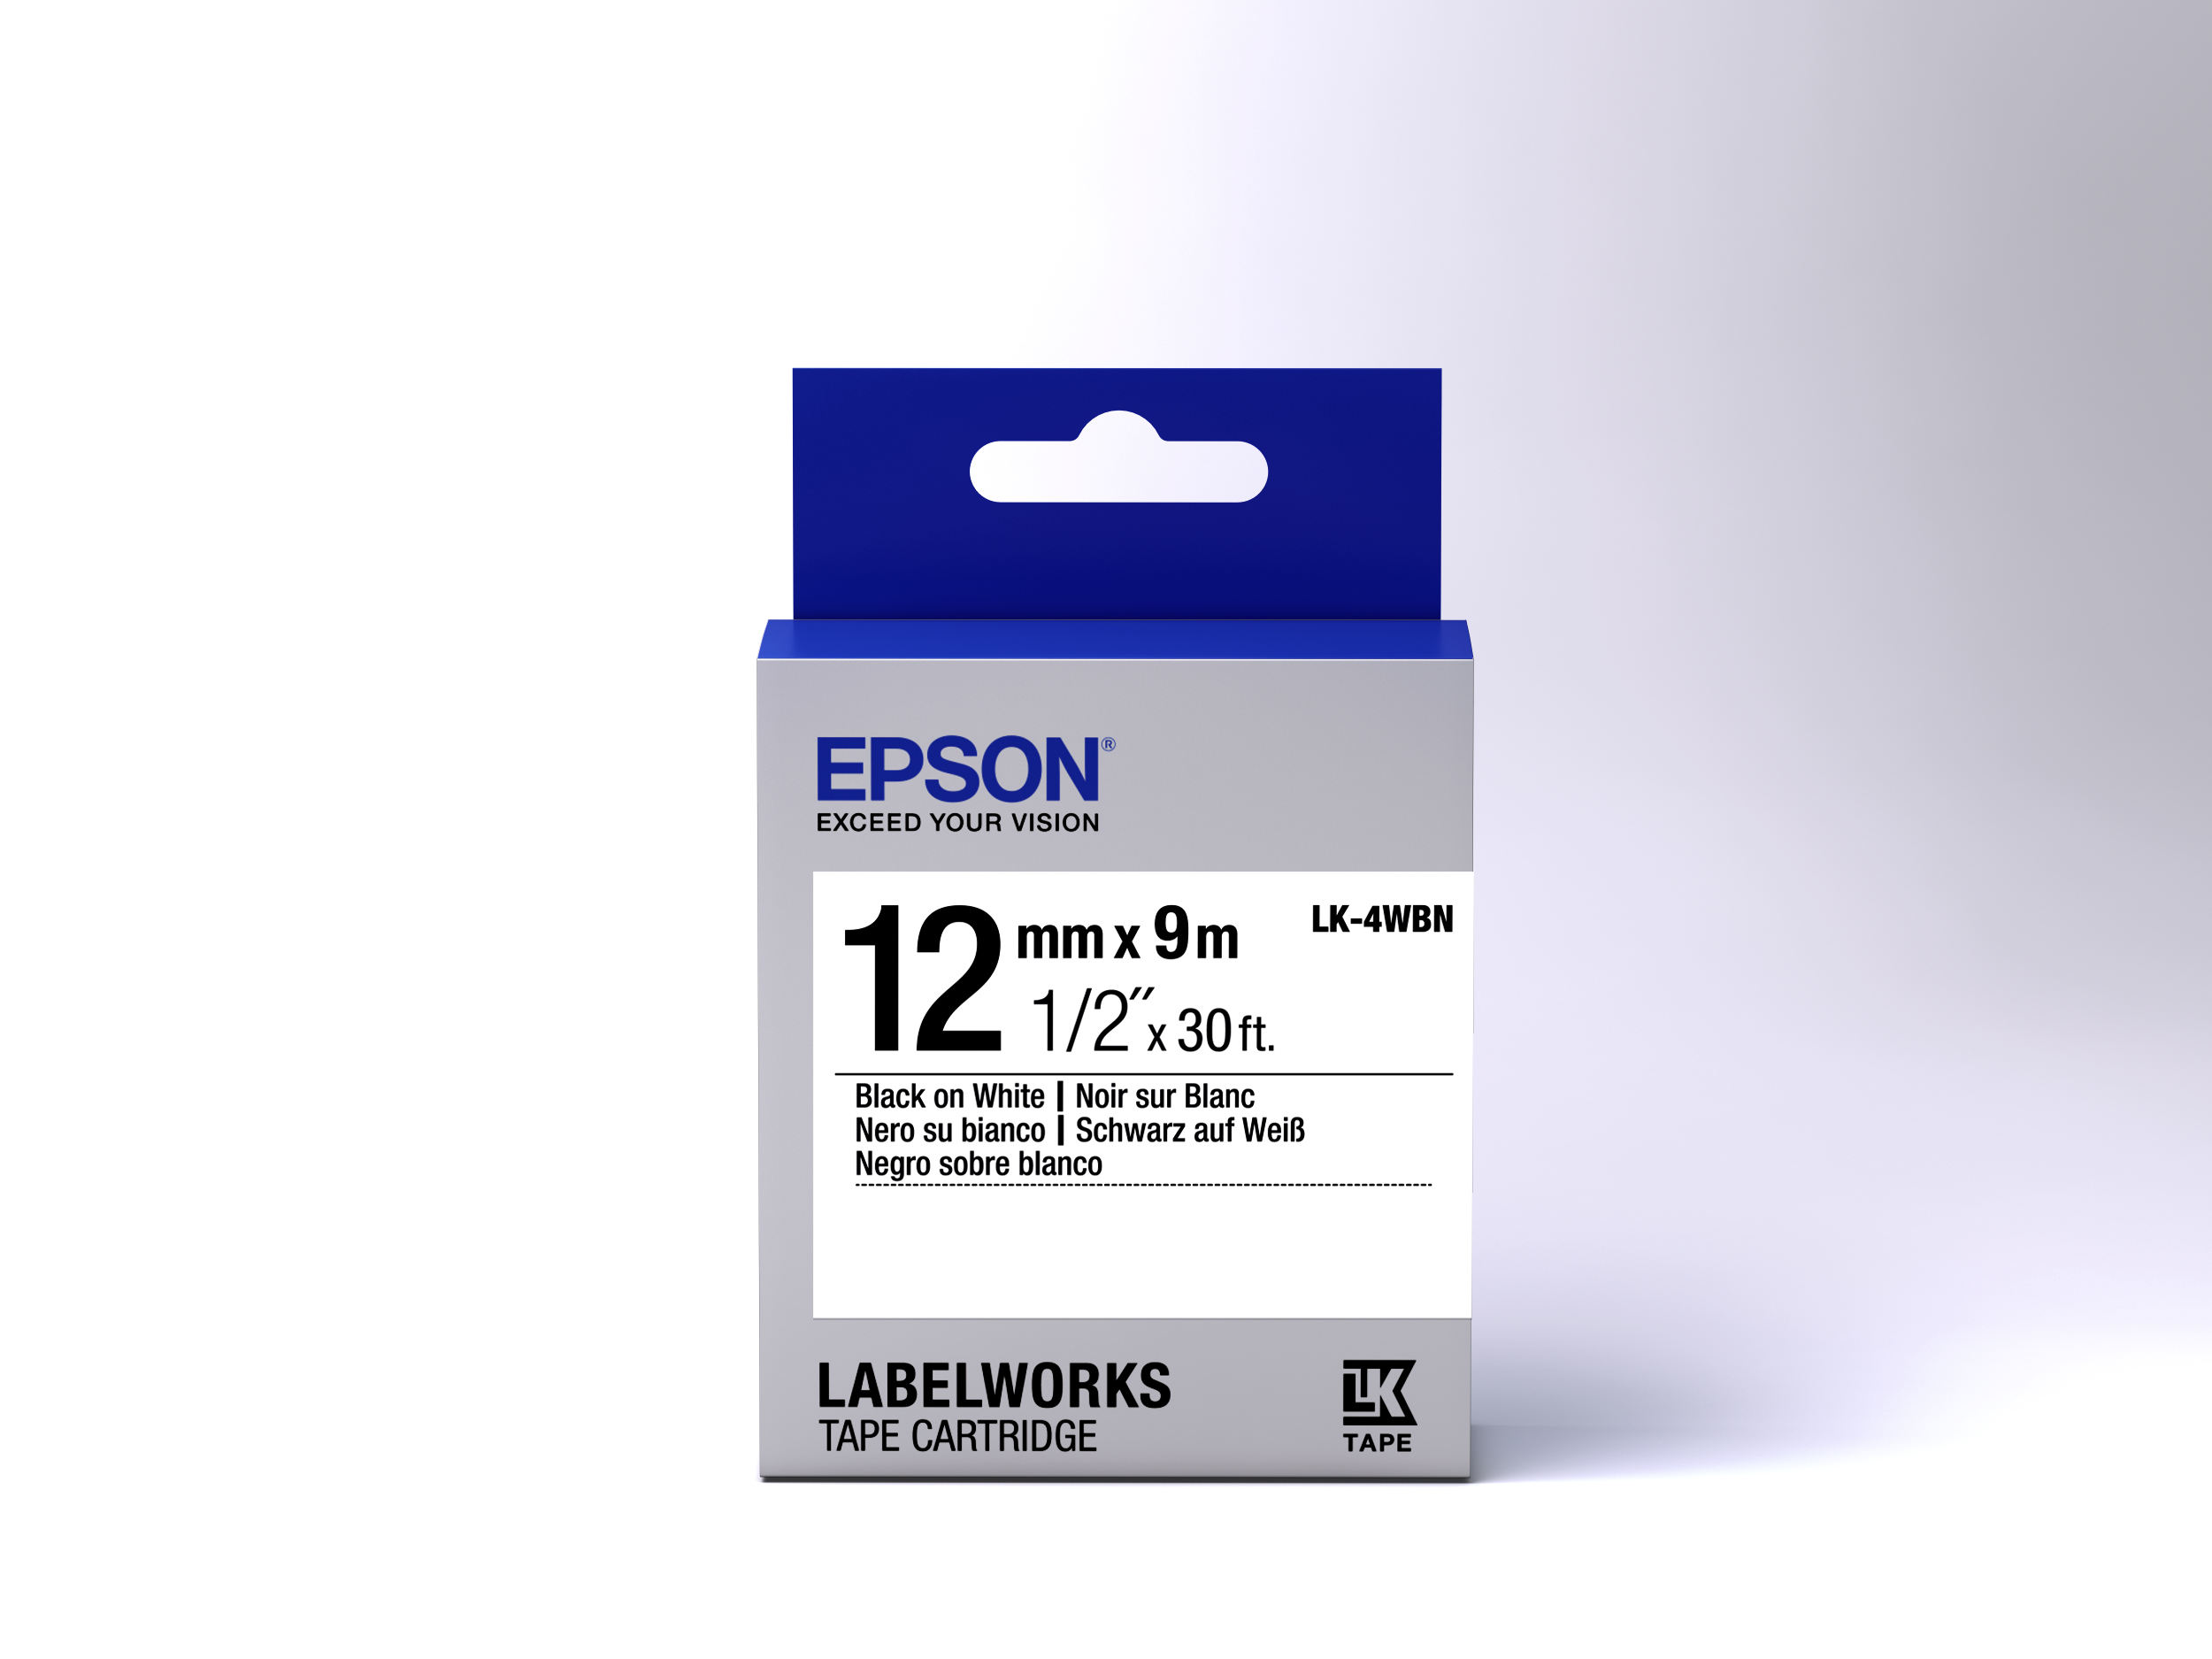 EPSON Paper Label LK-4WBN